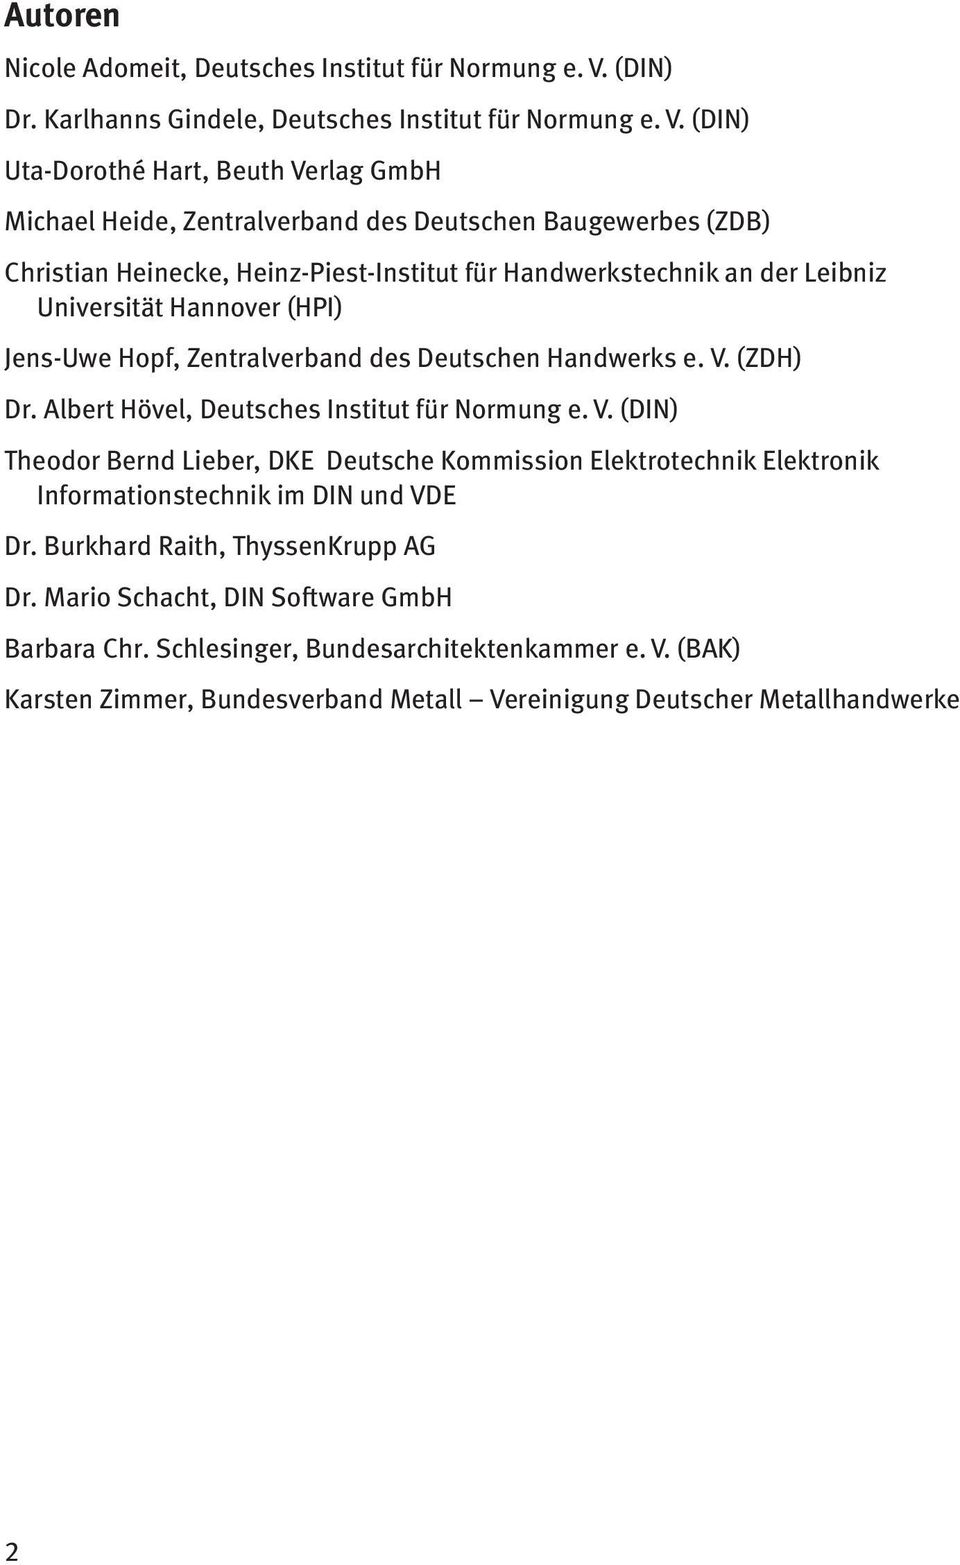 (DIN) Uta-Dorothé Hart, Beuth Verlag GmbH Michael Heide, Zentralverband des Deutschen Baugewerbes (ZDB) Christian Heinecke, Heinz-Piest-Institut für Handwerkstechnik an der Leibniz Universität